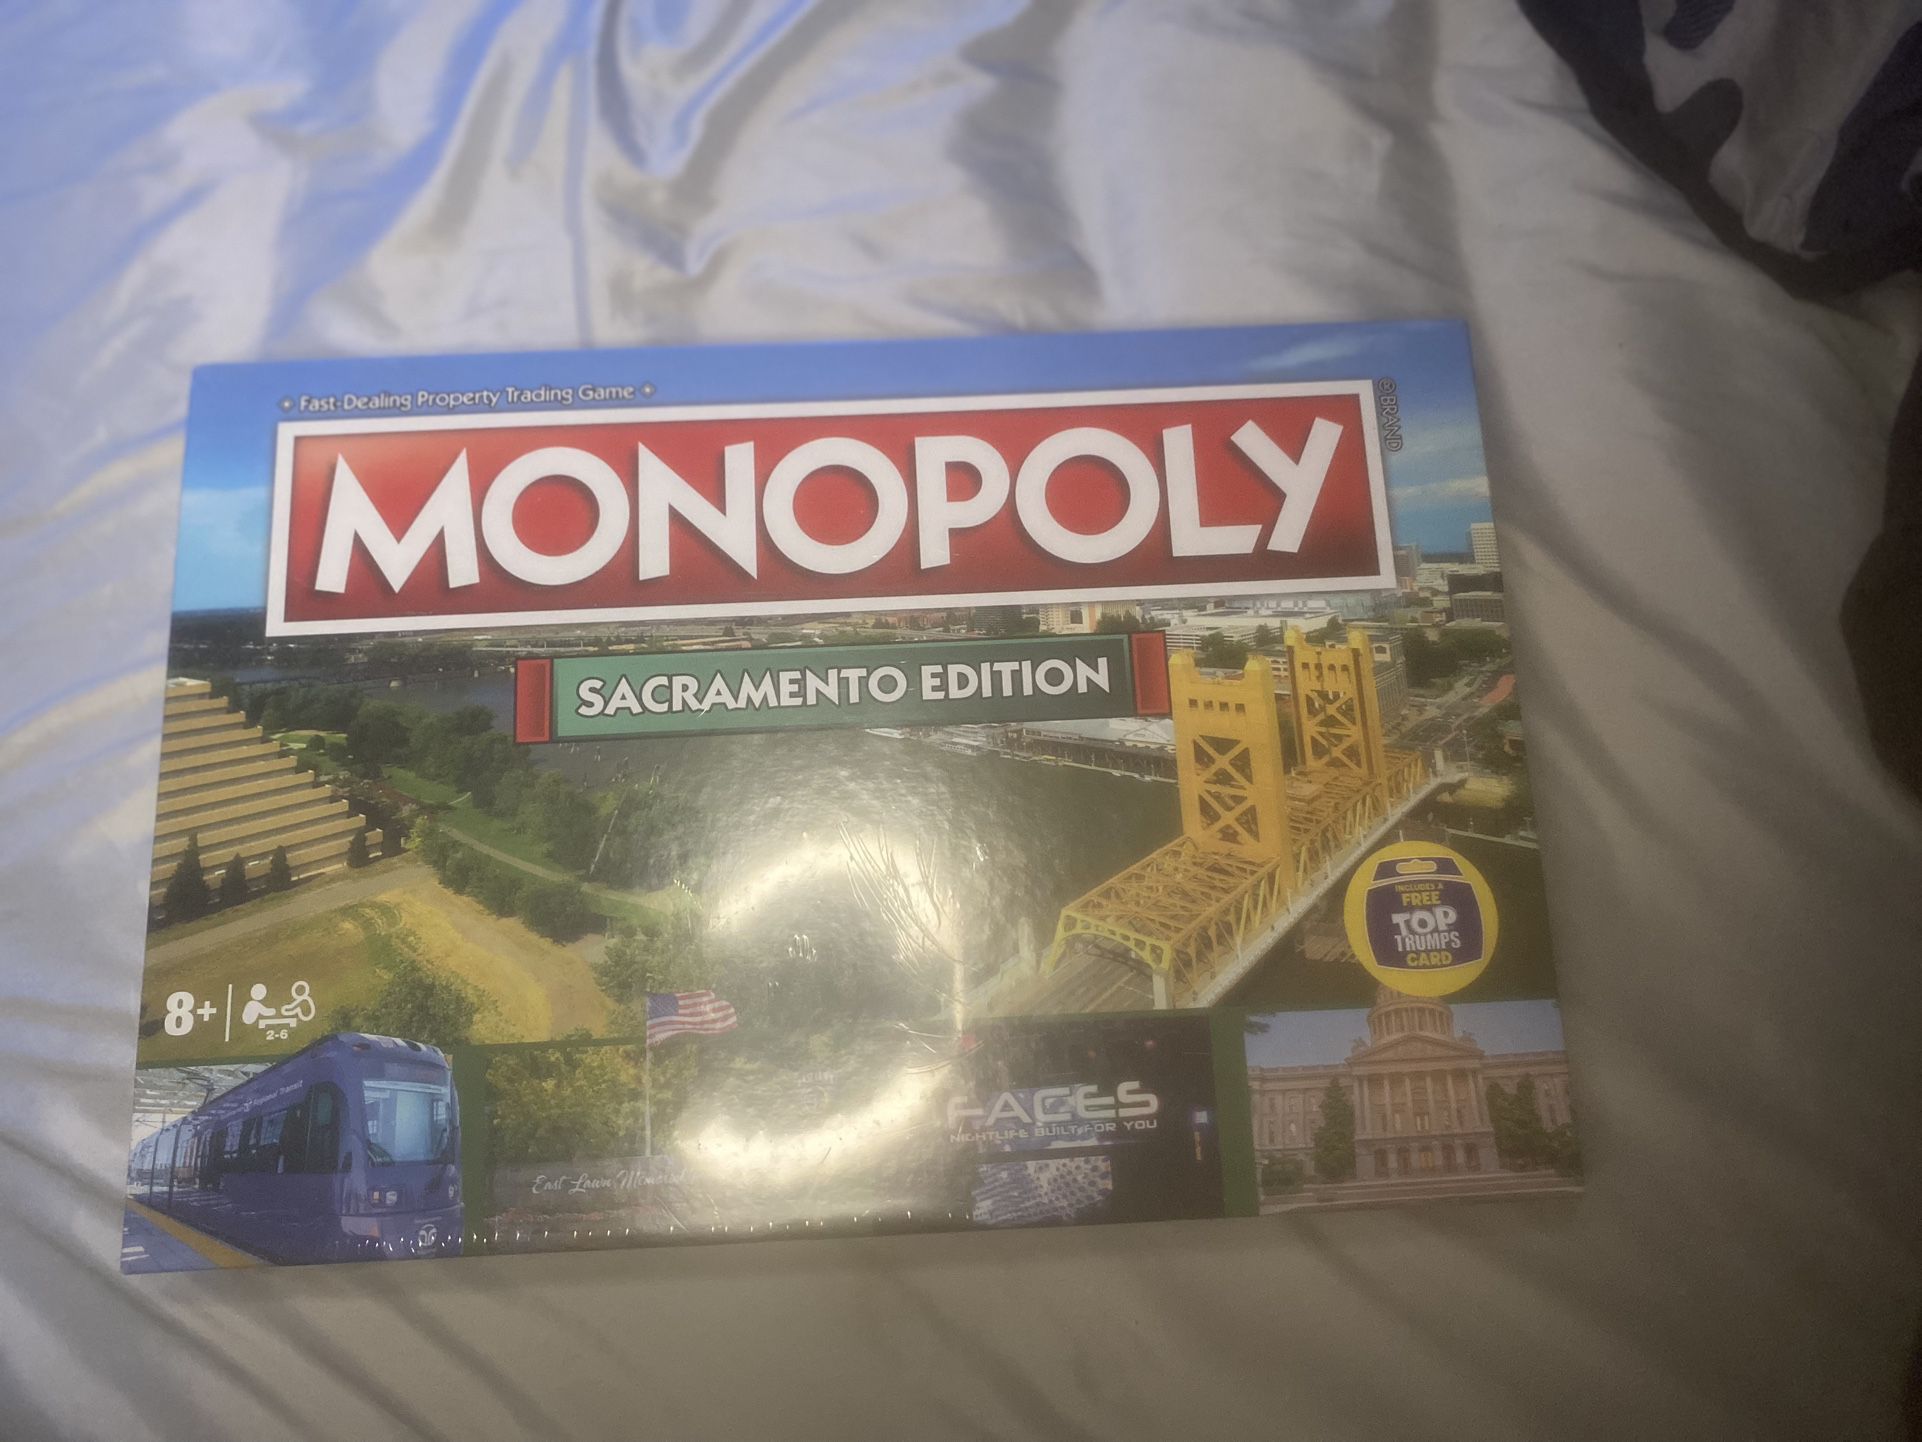 Monopoly, Sacramento edition